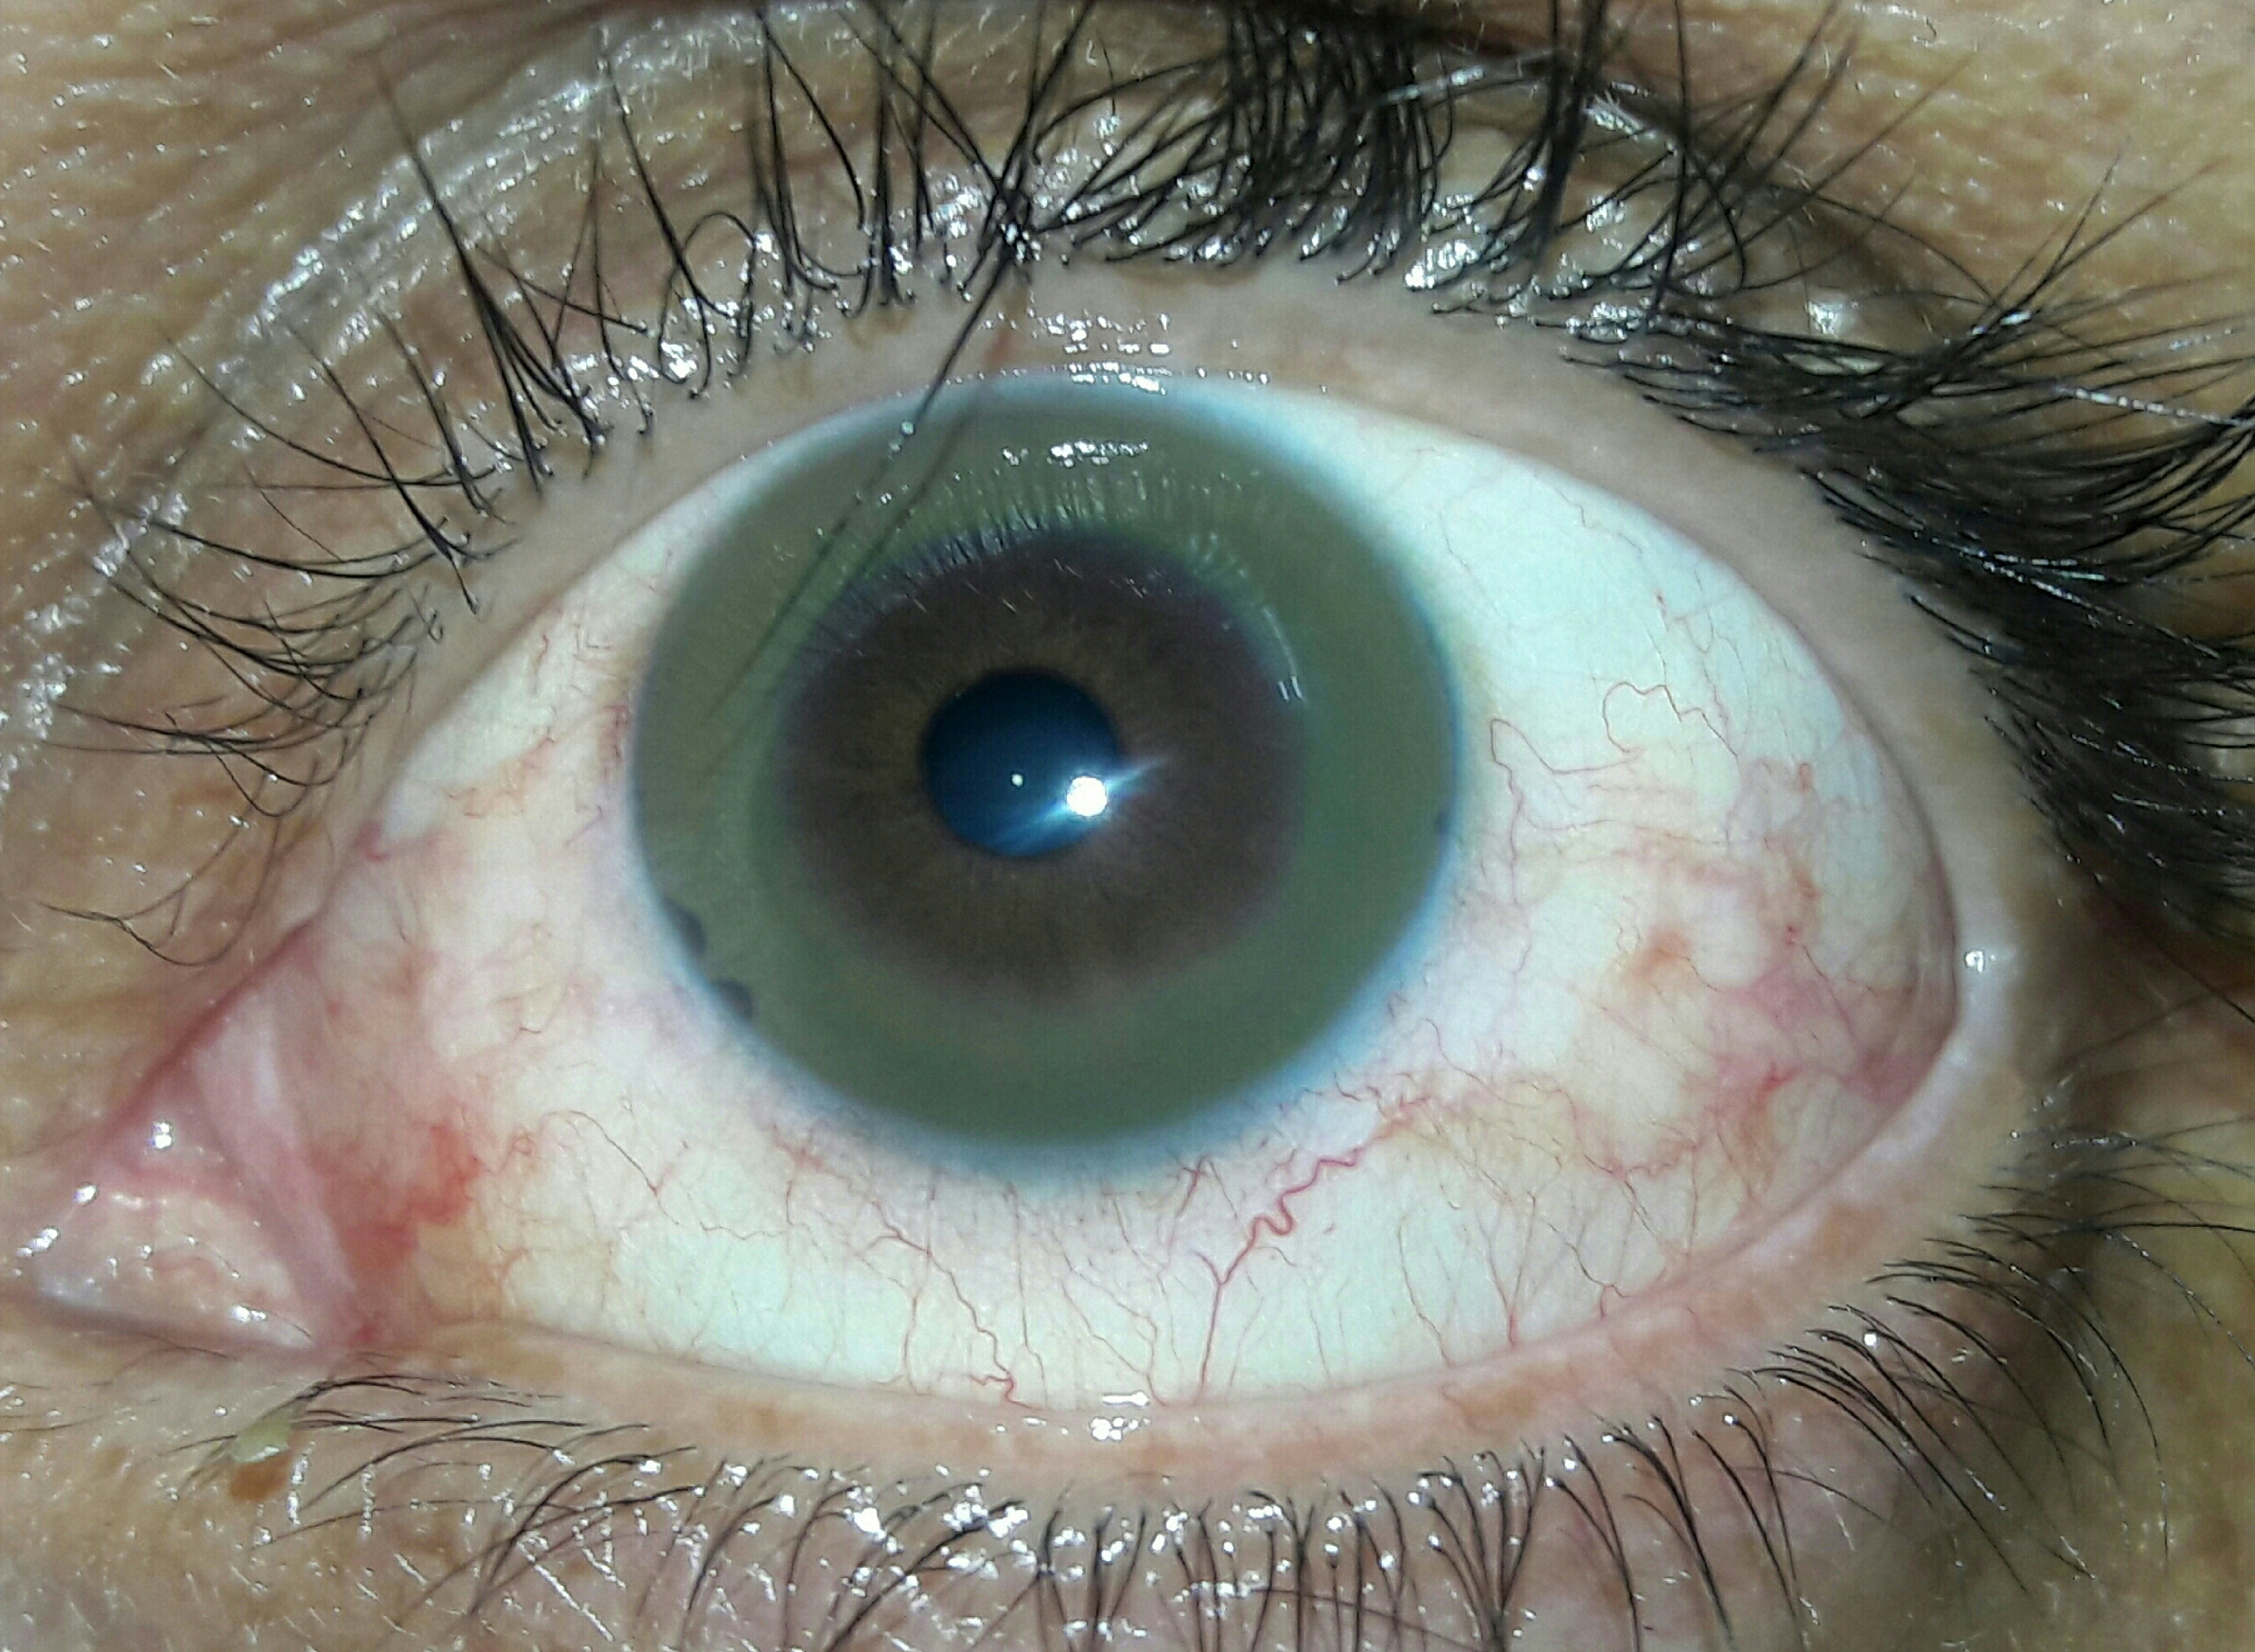 Kayser-Fleischer ring in eye due to liver disease - Stock 